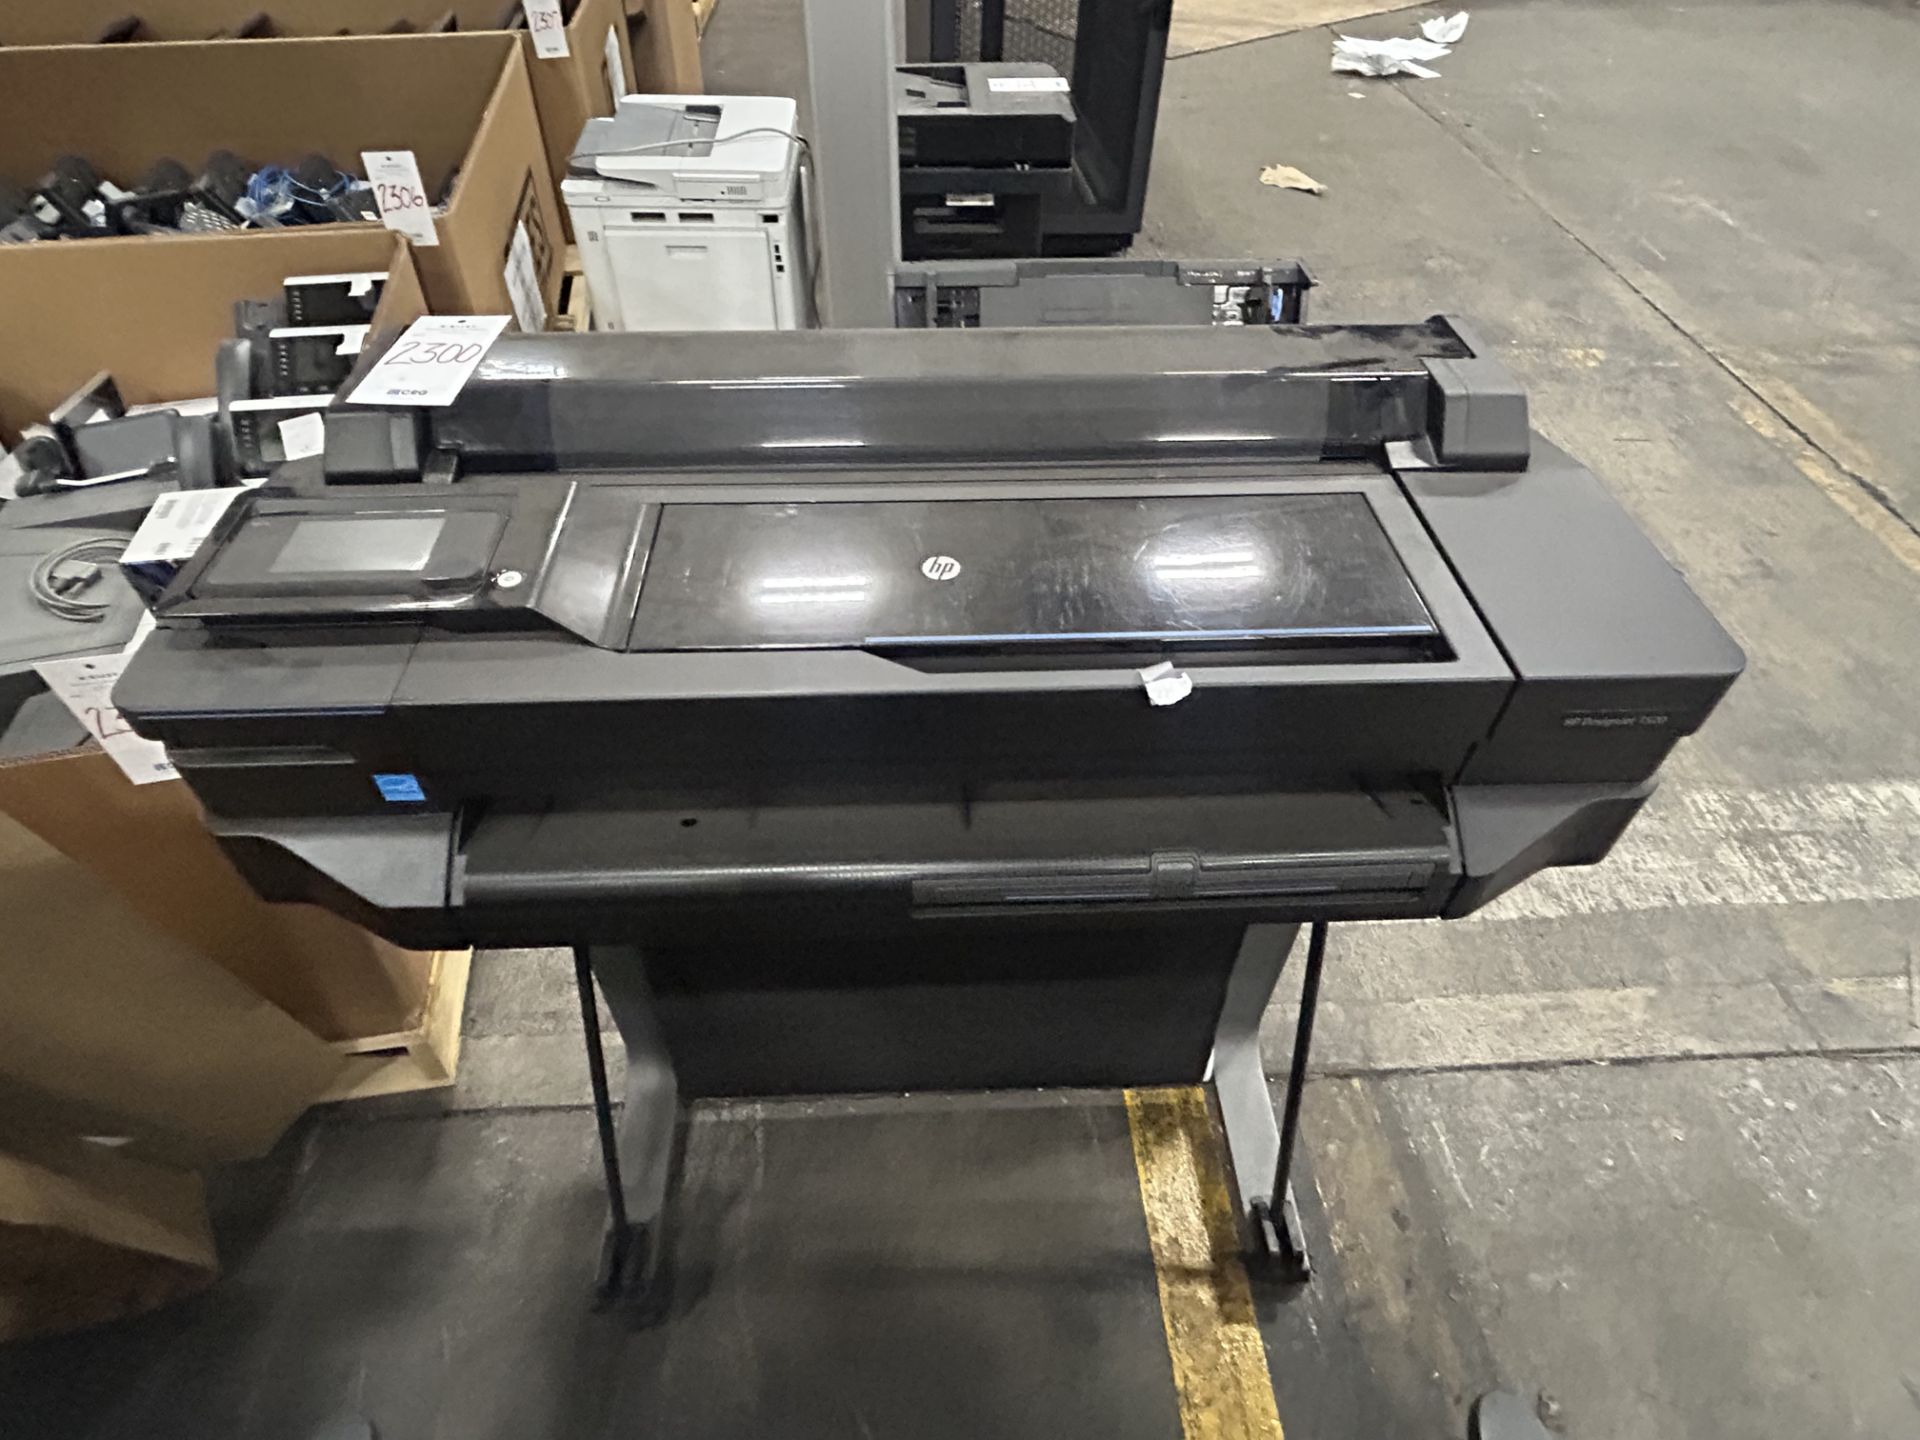 Hewlett Packard DesignJet T520 printer